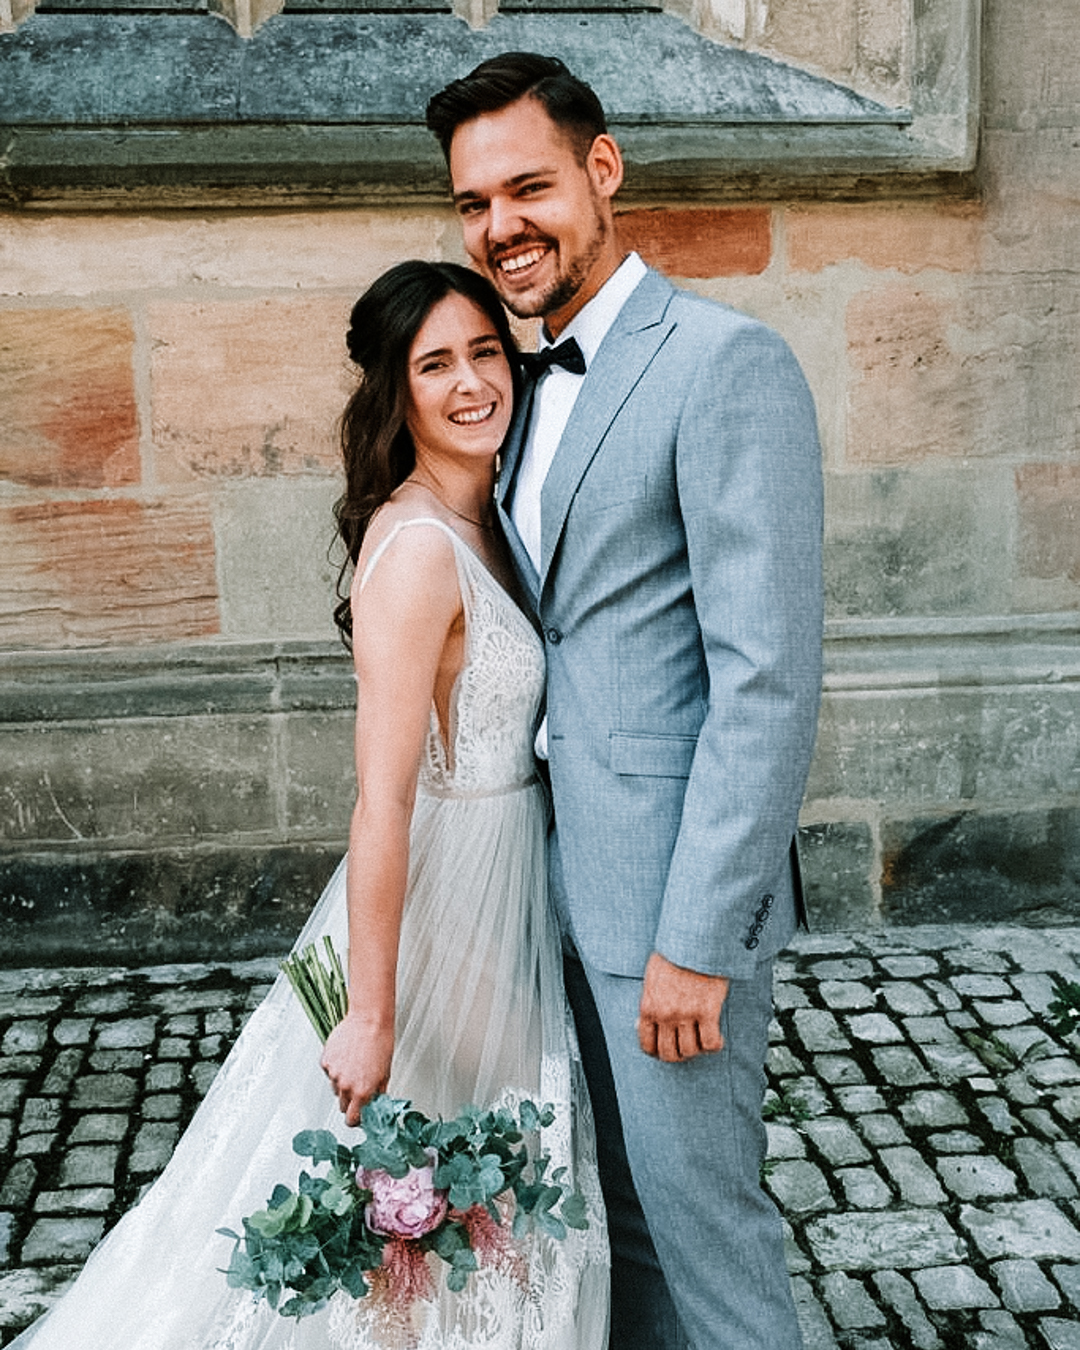 Strahlendes Brautpaar in Hochzeitskleidung lächelt vor historischer Steinmauer, die Braut hält einen Bouquet mit Eukalyptus und Pfingstrosen.